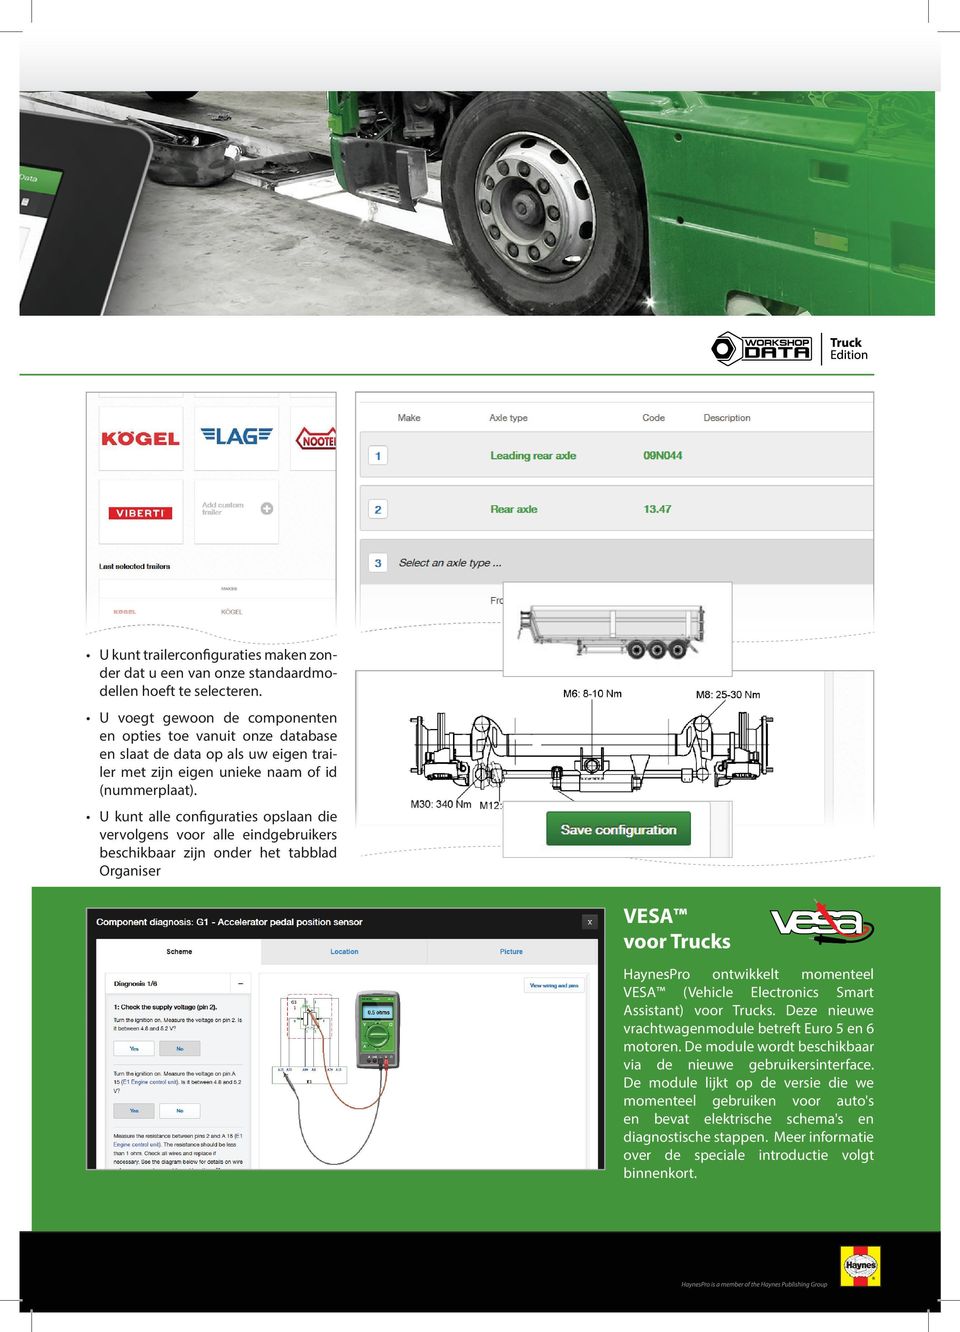 U kunt alle configuraties opslaan die vervolgens voor alle eindgebruikers beschikbaar zijn onder het tabblad Organiser VESA voor Trucks HaynesPro ontwikkelt momenteel VESA (Vehicle Electronics